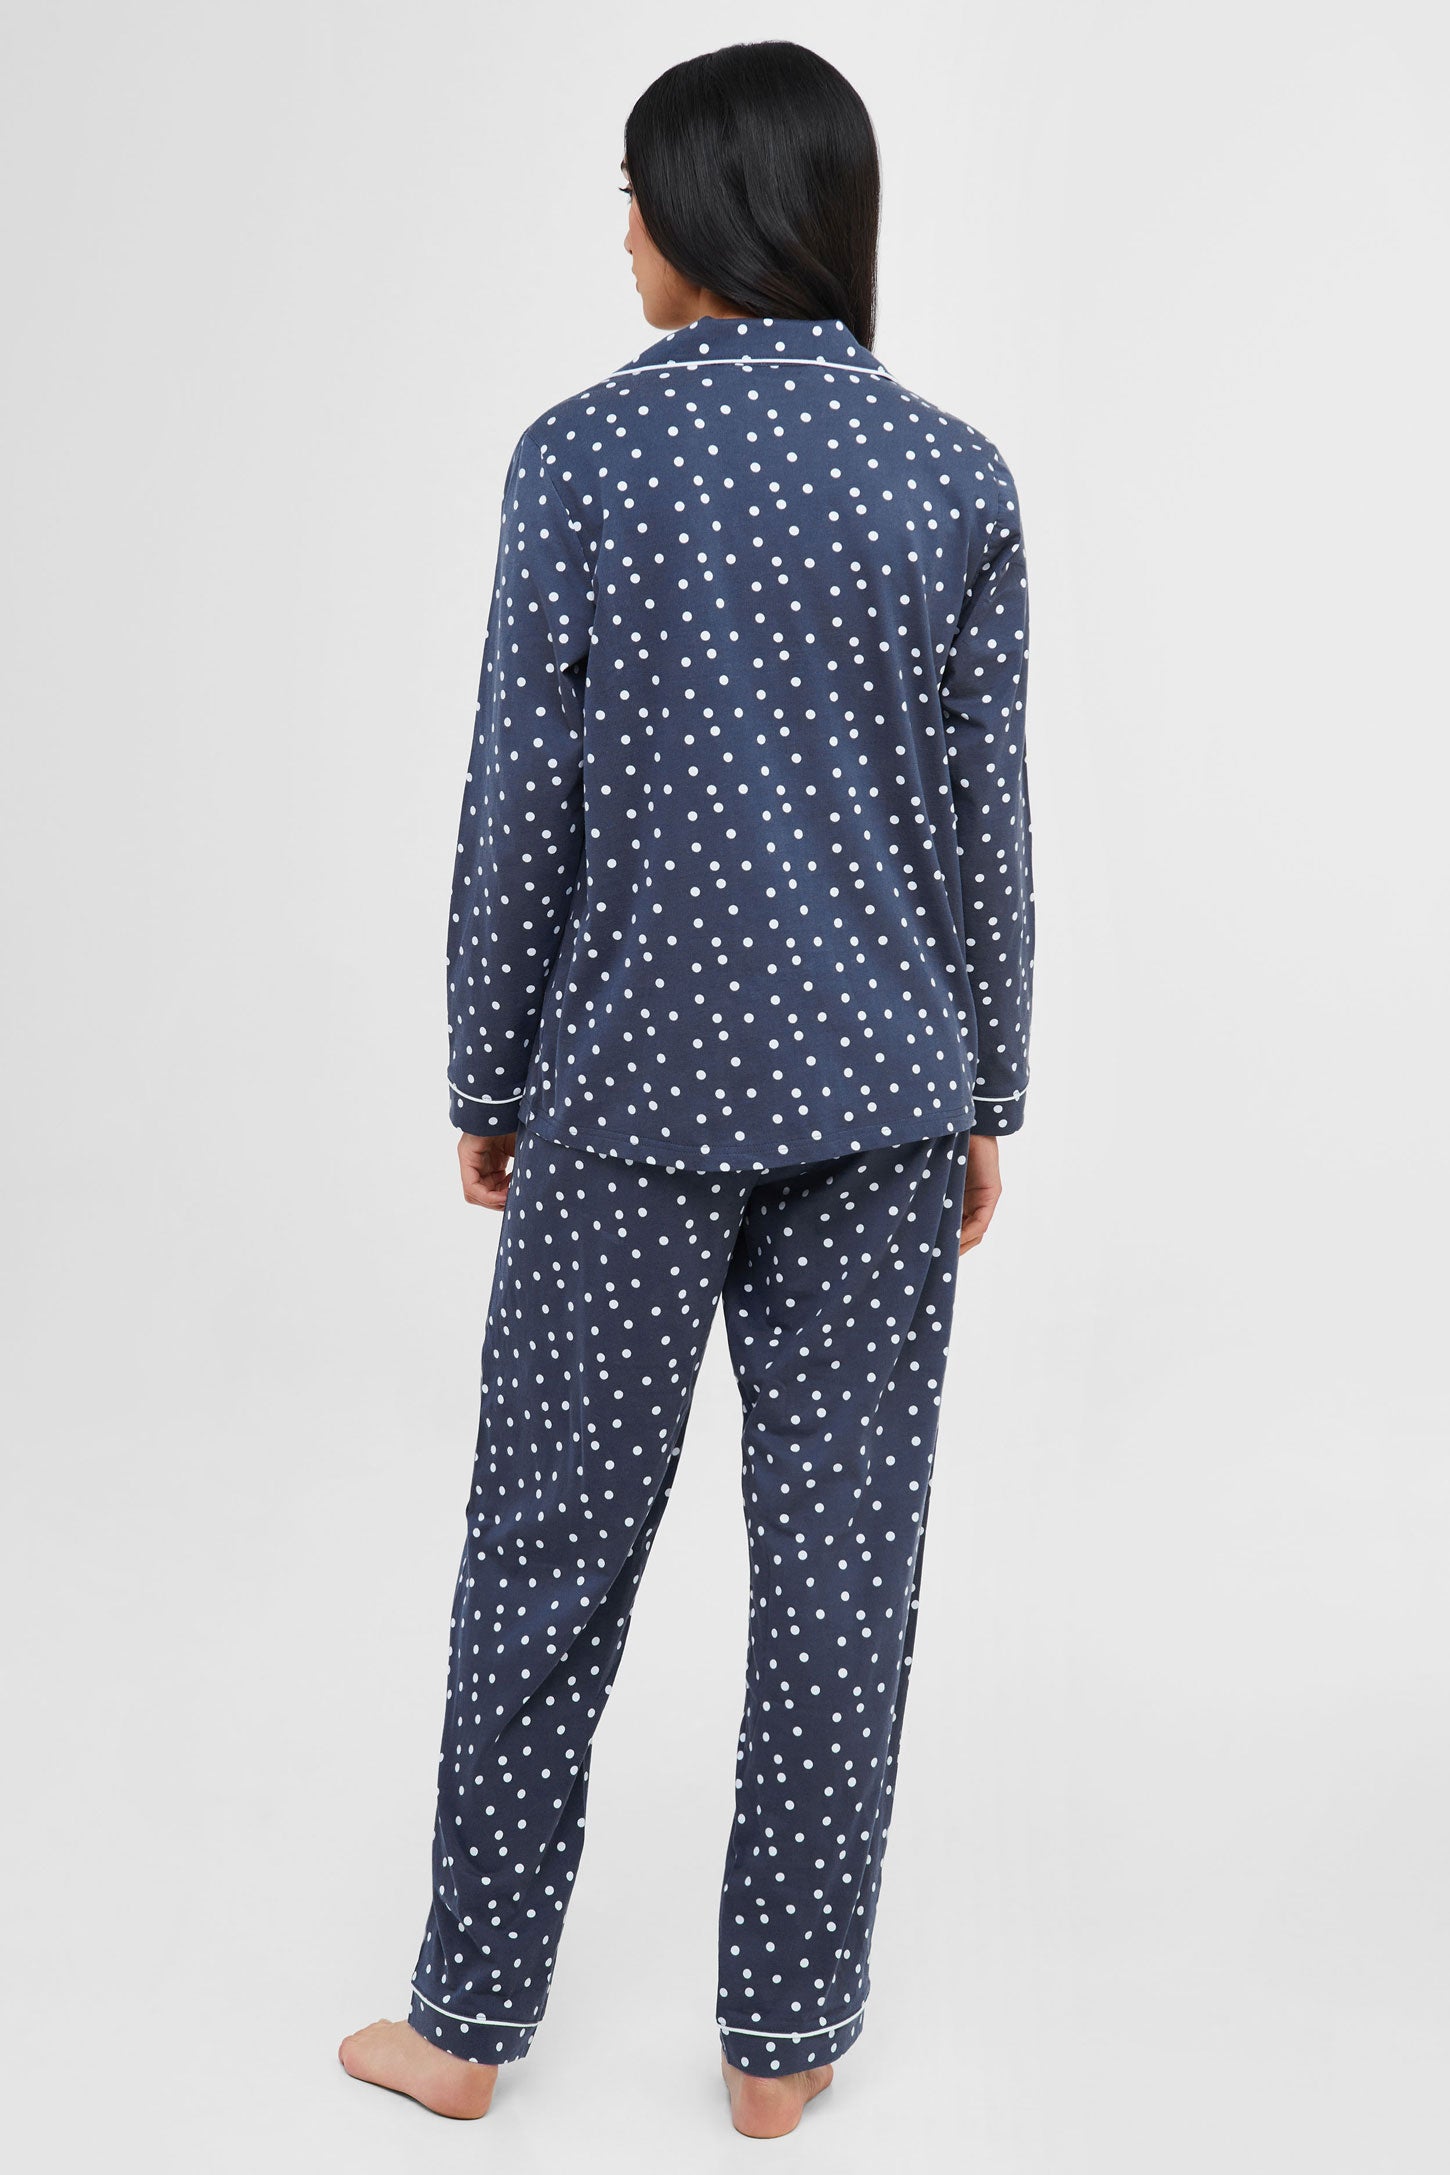 Pyjama 2-pièces chemise et pantalon coton - Femme && BLEU